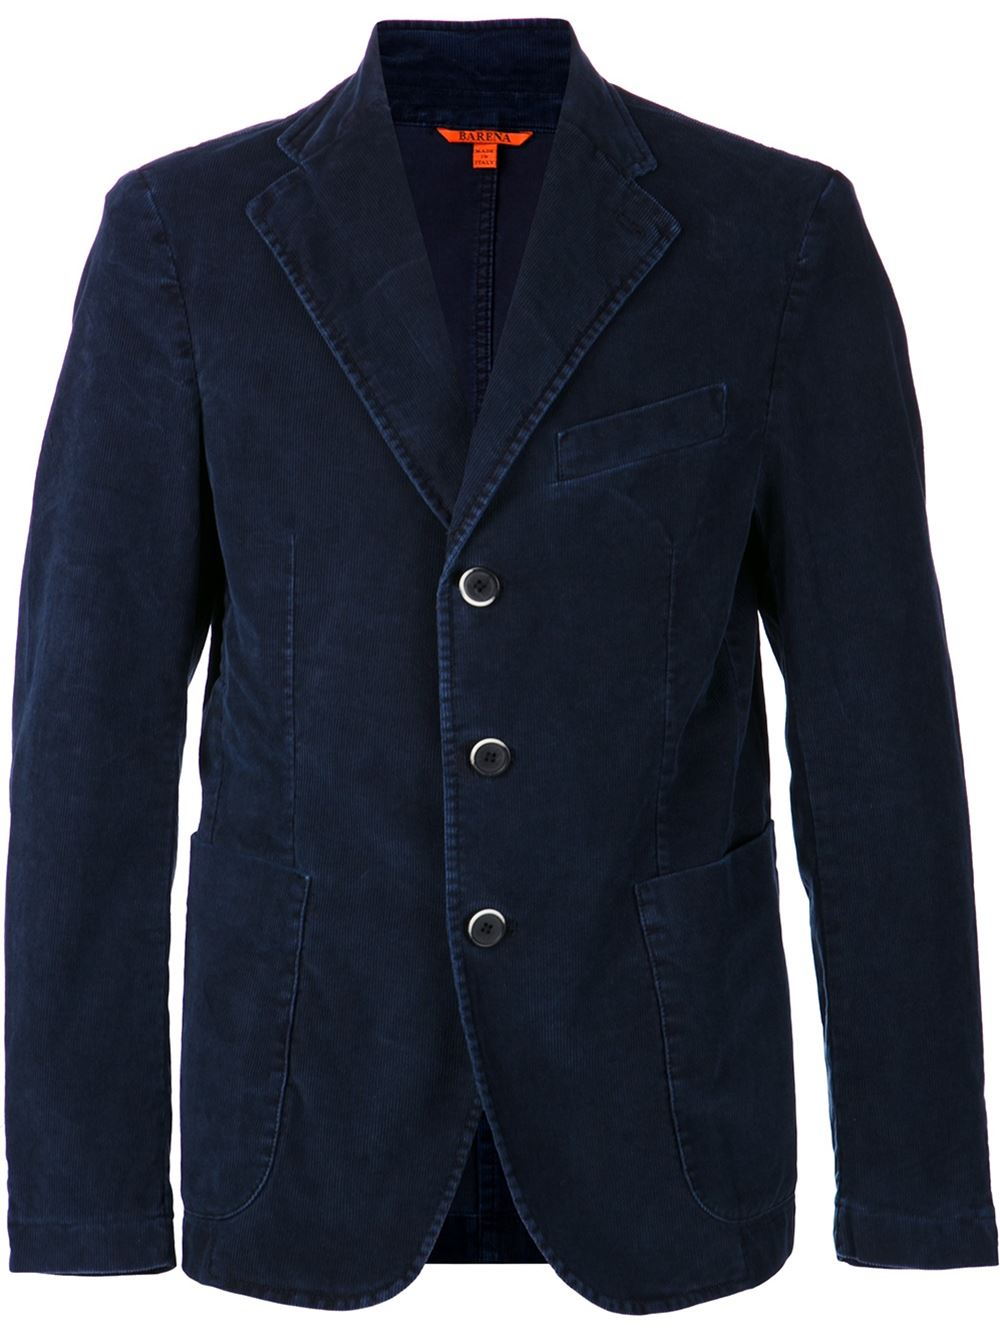 Lyst - Barena Corduroy Jacket in Blue for Men